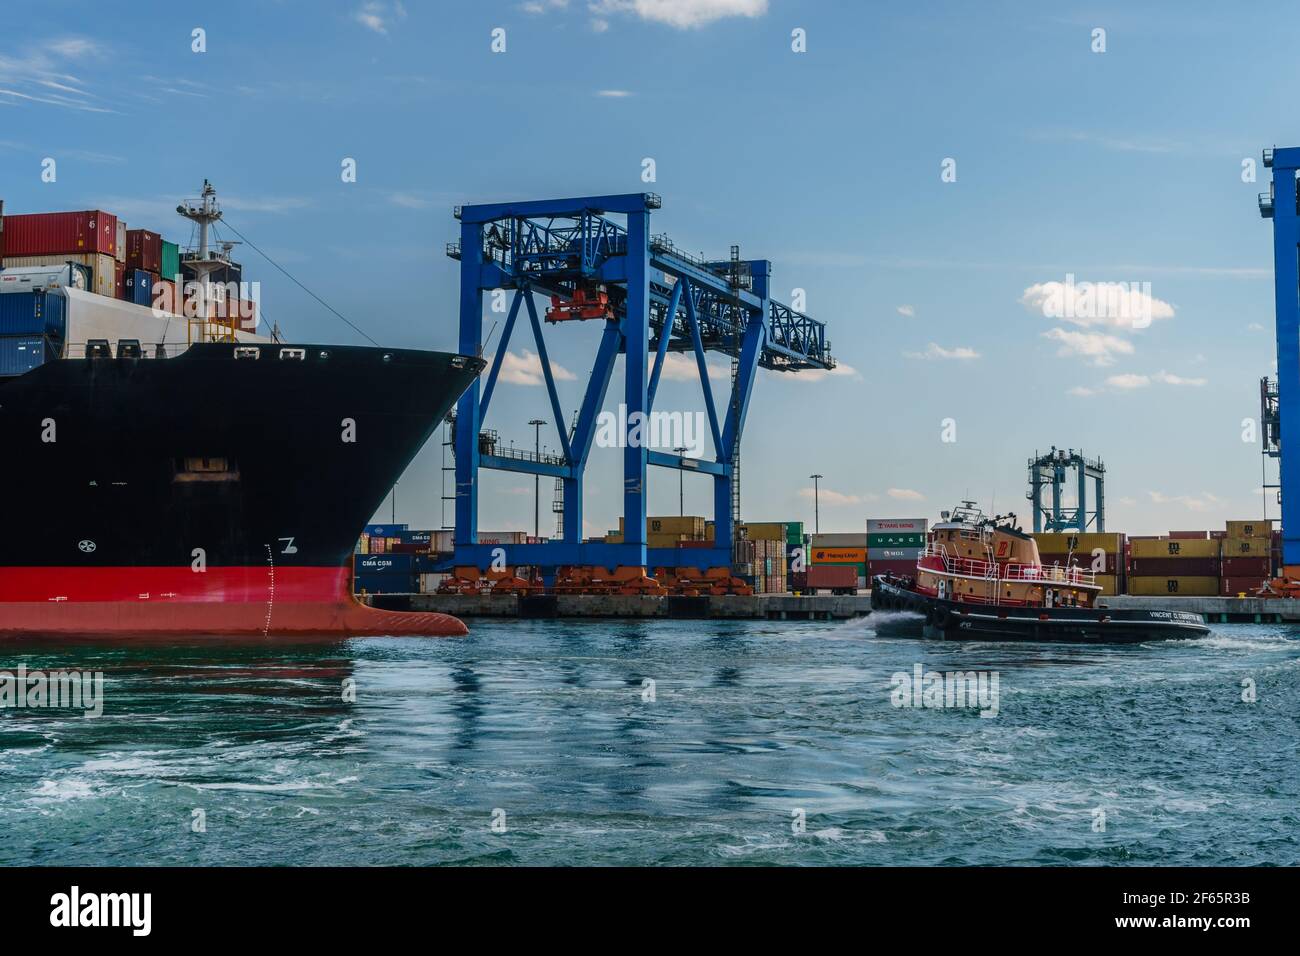 Boston, MA, EE.UU. - 11 de marzo de 2019: Barco de contenedores totalmente cargado que sale del puerto de Boston con remolcador y grúas de embarque en el fondo. Foto de stock